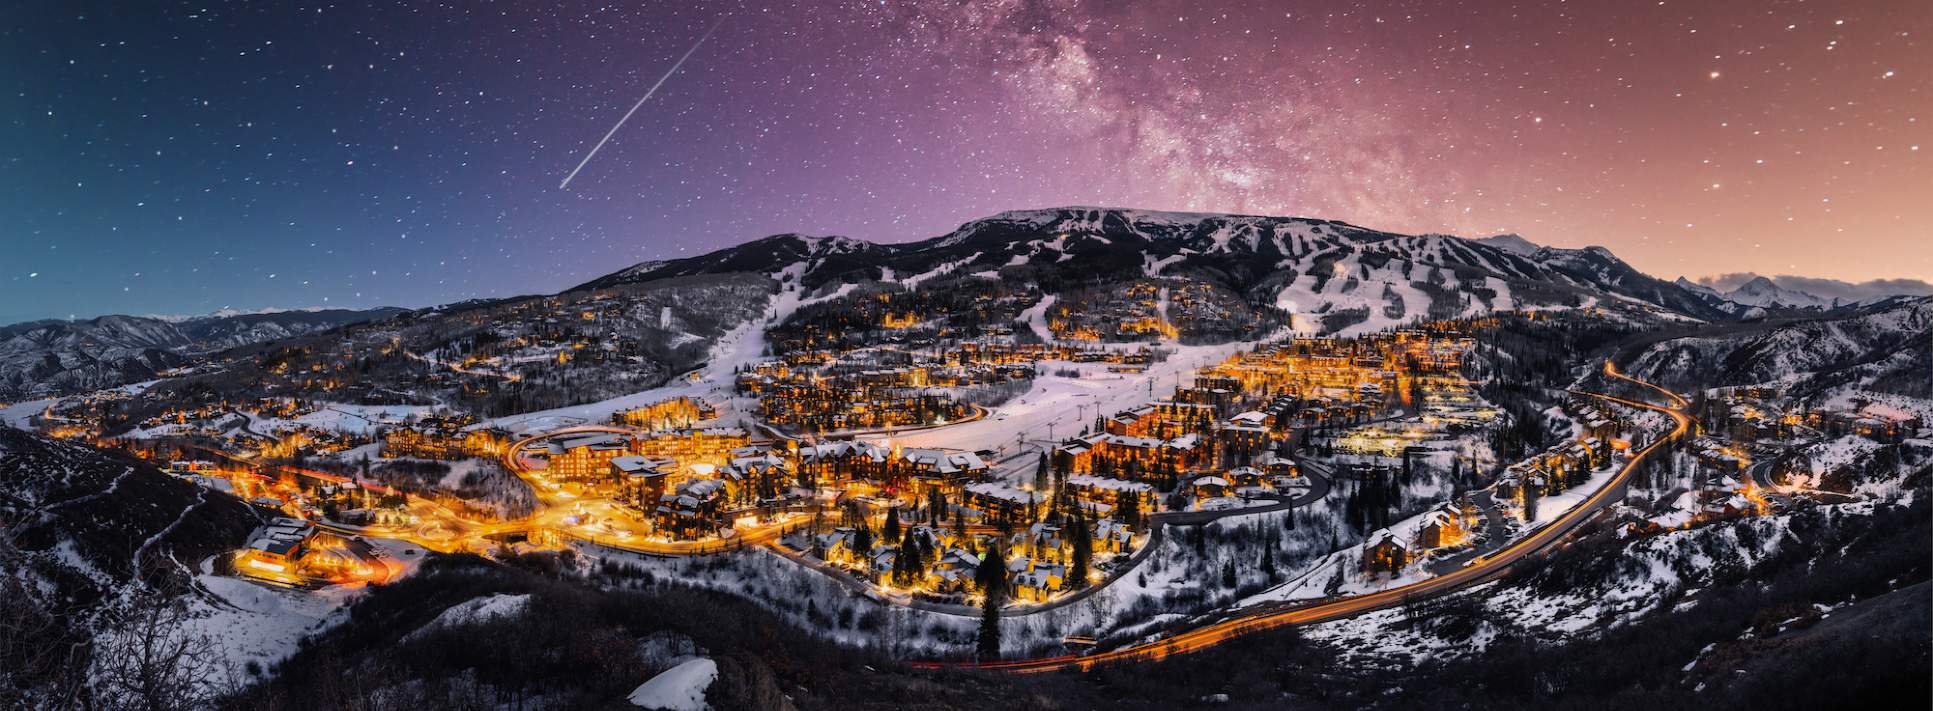 Aspen Snowmass. Colorado